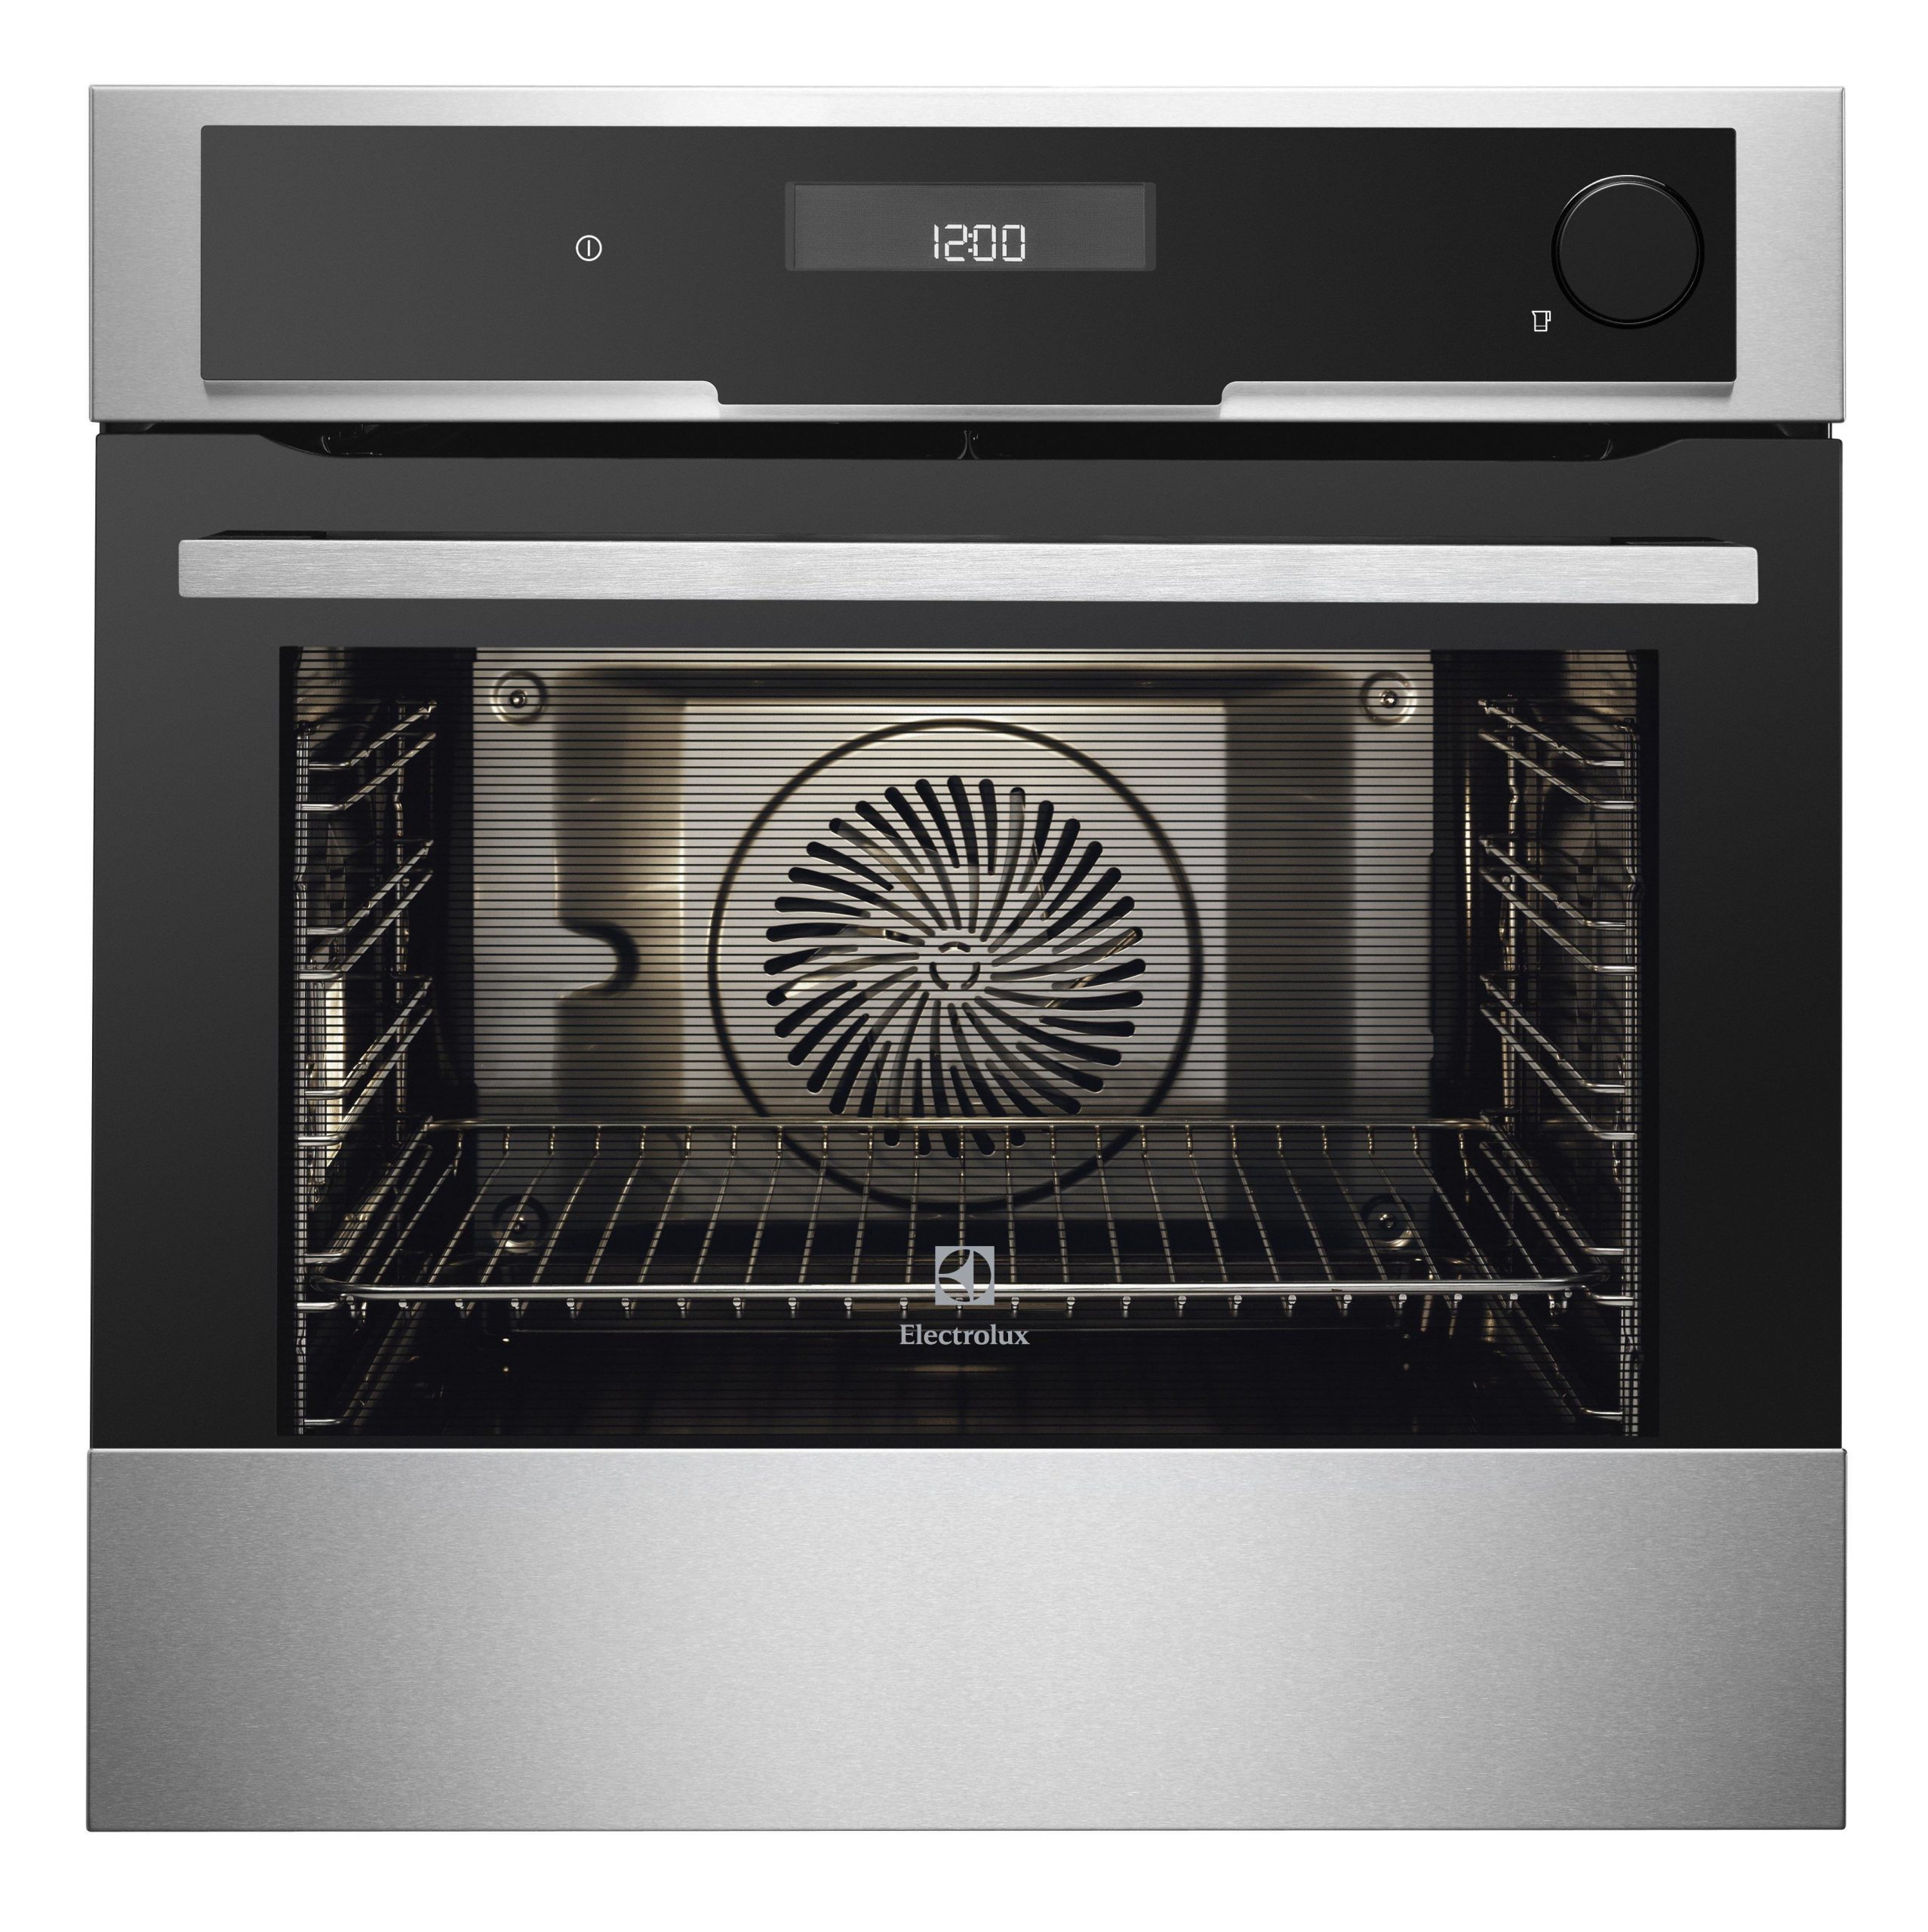 ELECTROLUX Dishwasher Safe Microwave Oven Steamer Dish Steaming Rack Steam Pot 